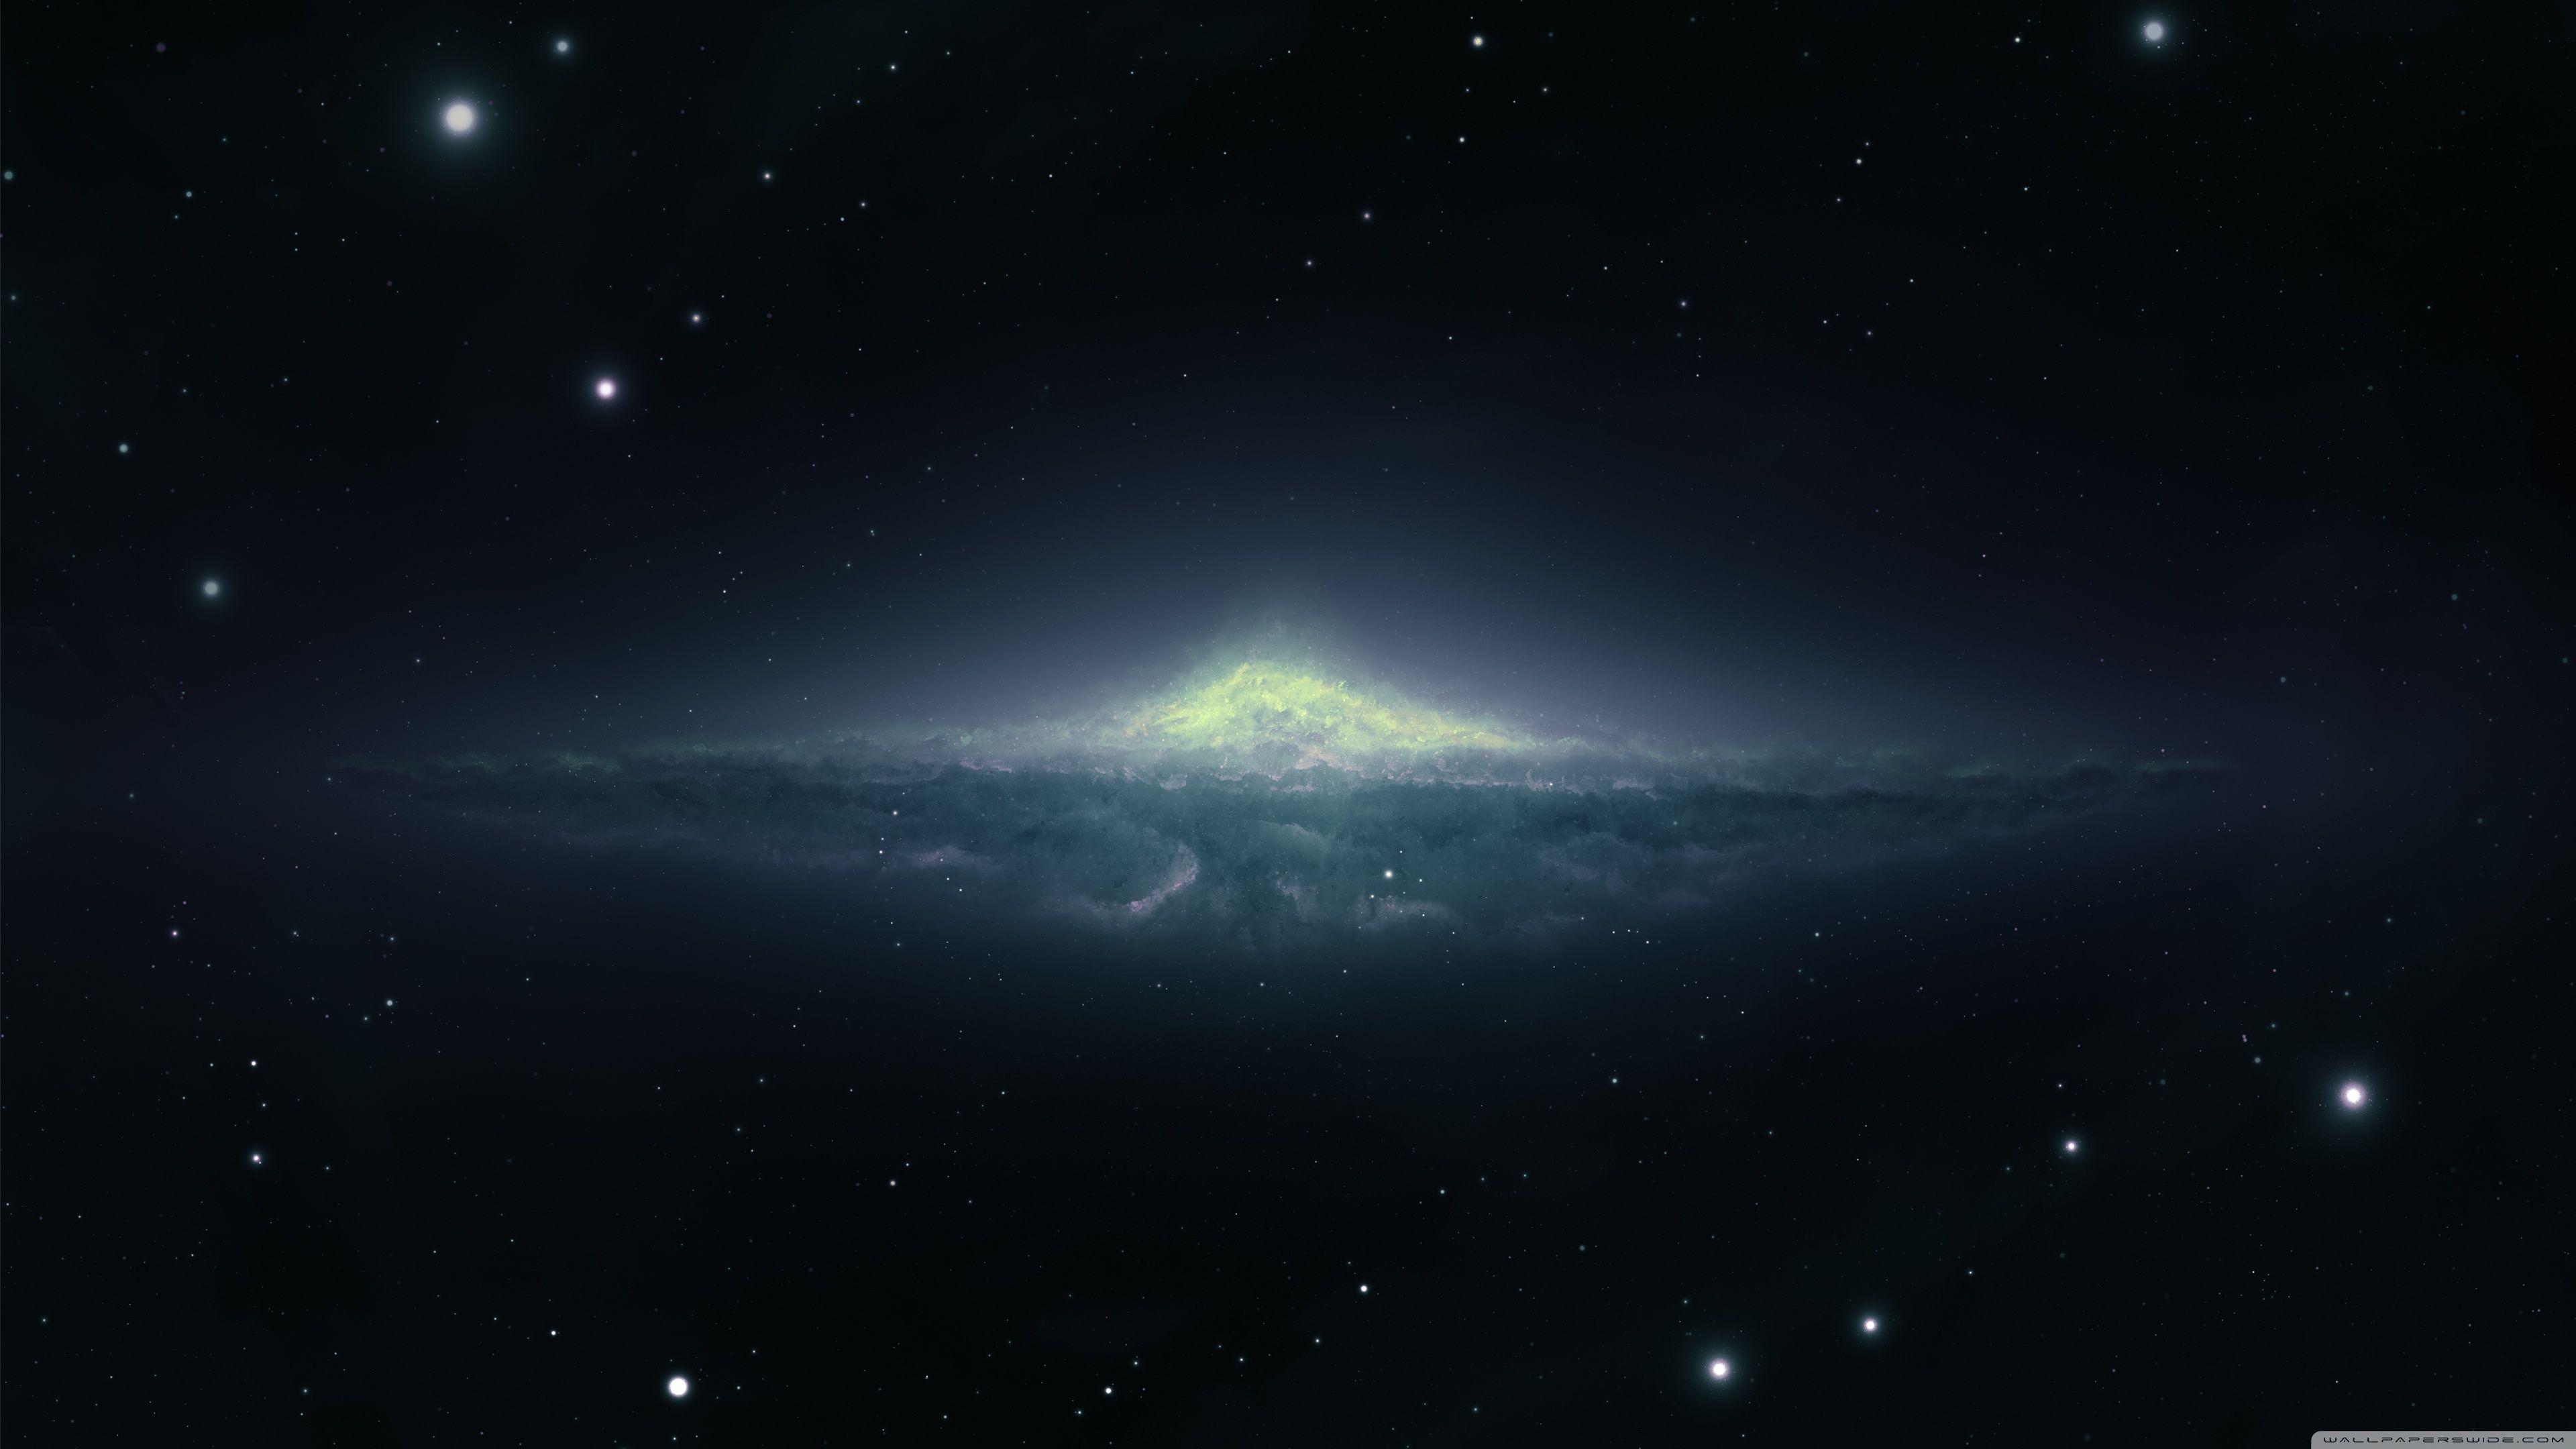 Andromeda Galaxy 4K Wallpapers - Top Free Andromeda Galaxy 4K